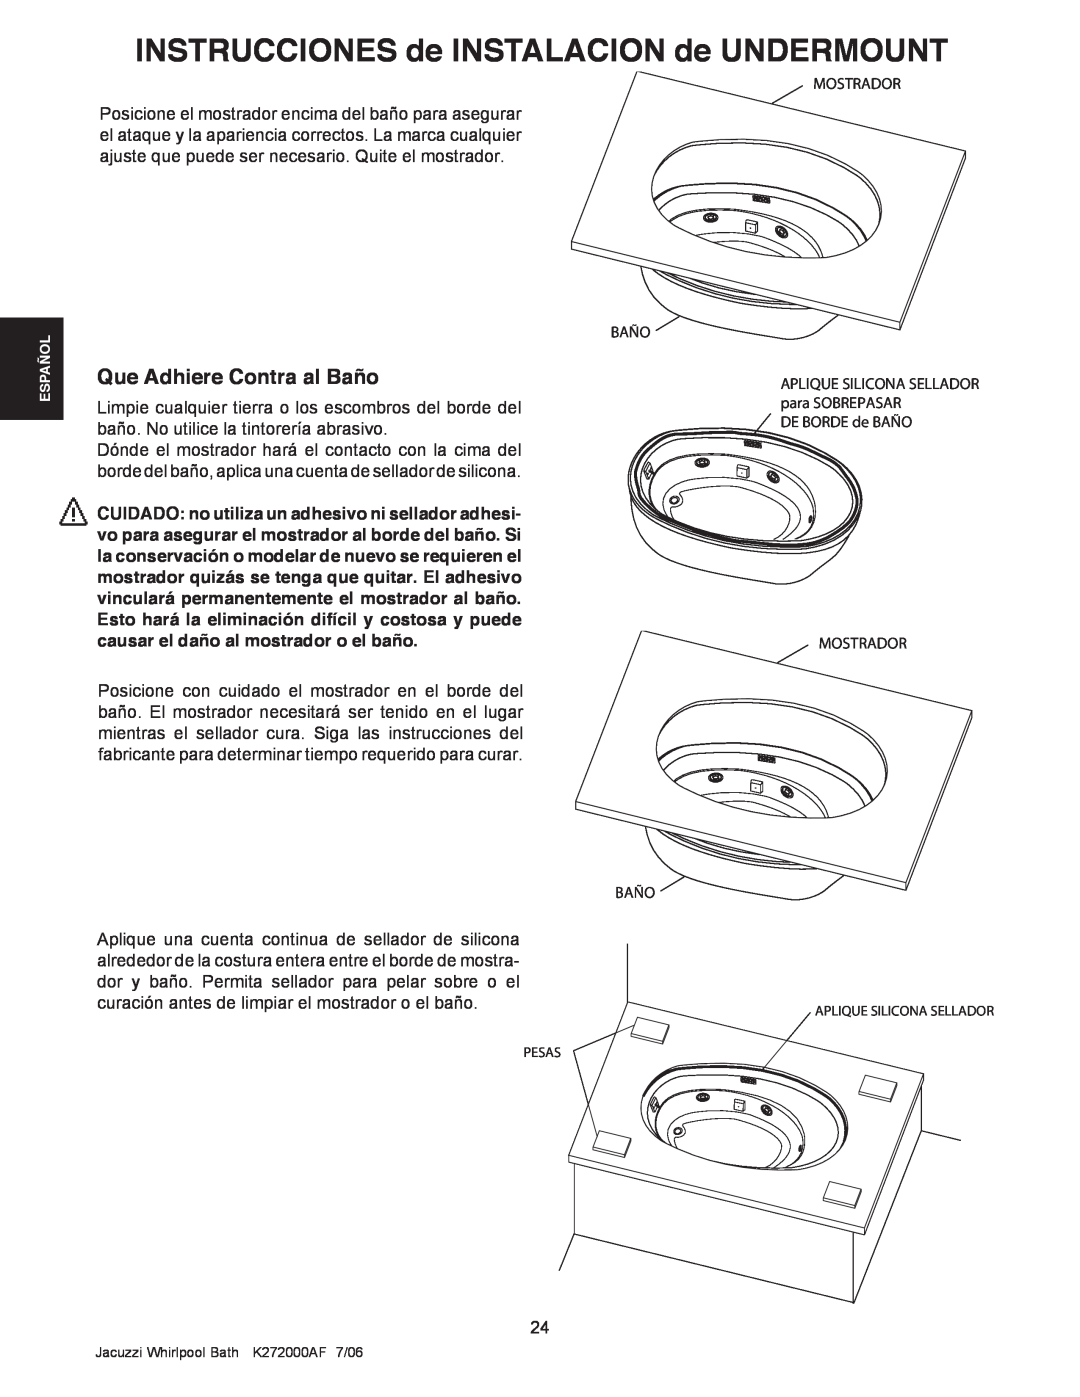 Jacuzzi K272000AF 7/06 manual Que Adhiere Contra al Baño, INSTRUCCIONES de INSTALACION de UNDERMOUNT 